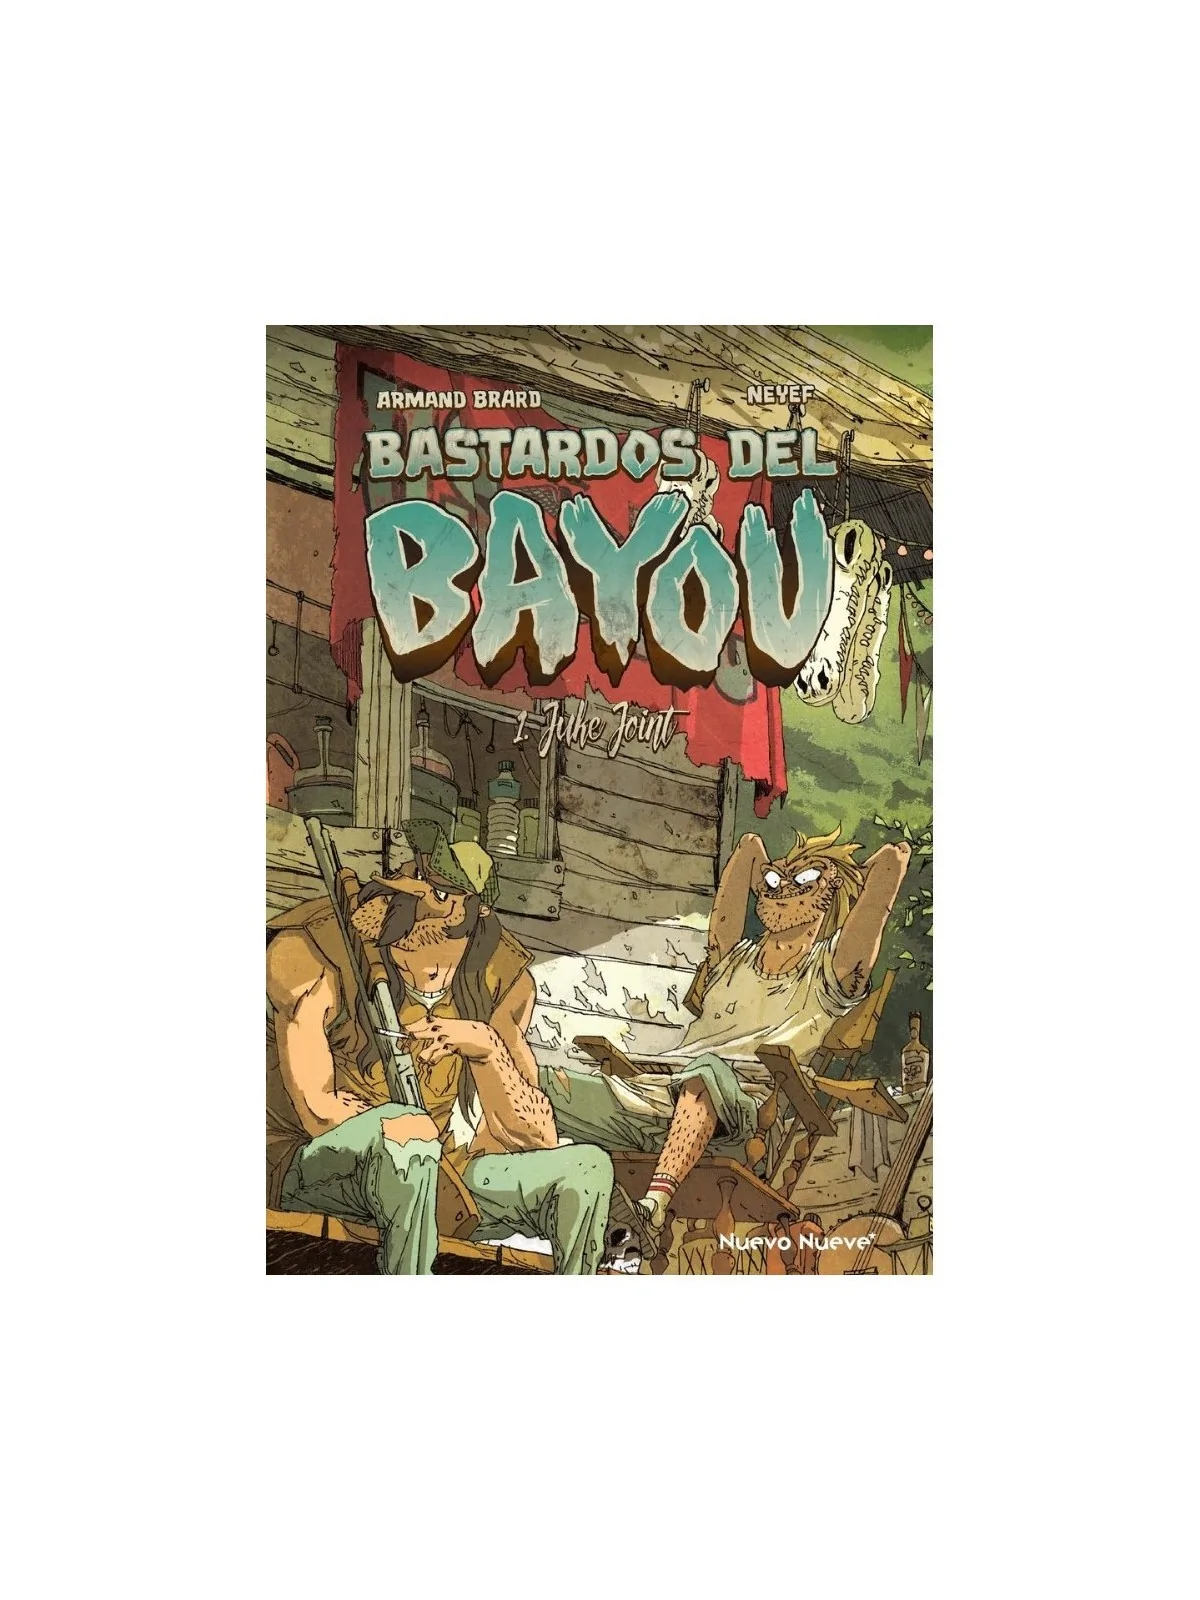 Comprar Bastardos del Bayou 01: Juke Joint barato al mejor precio 15,2